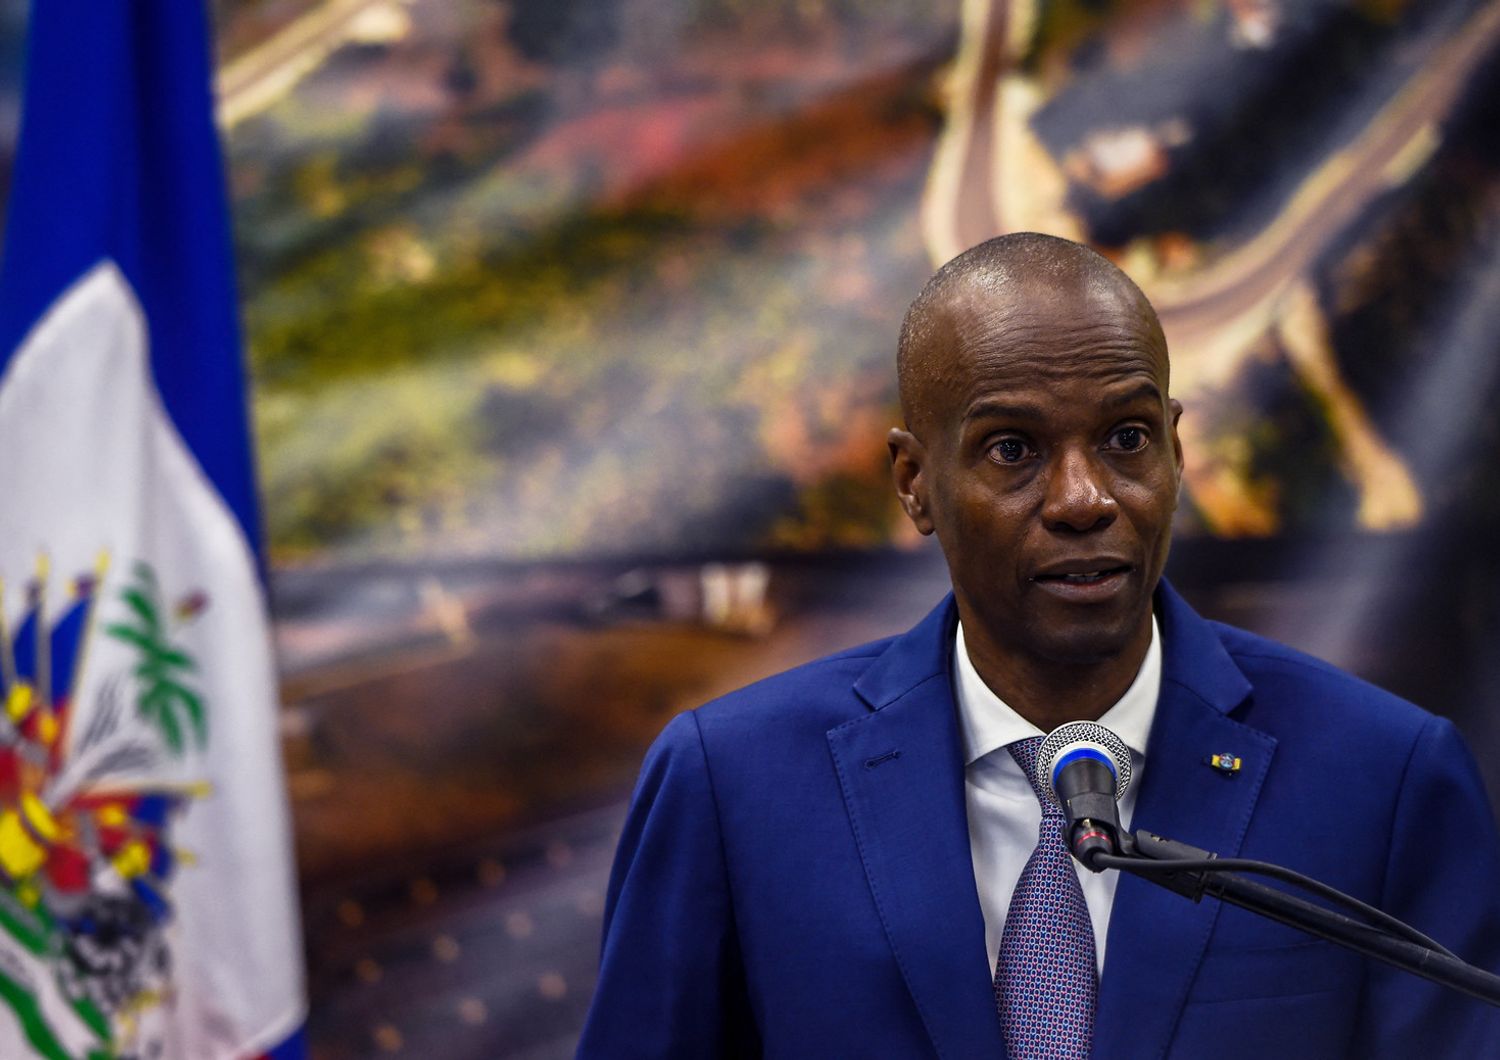 Il presidente di Haiti Moise, ucciso in casa da un commando di sicari stranieri